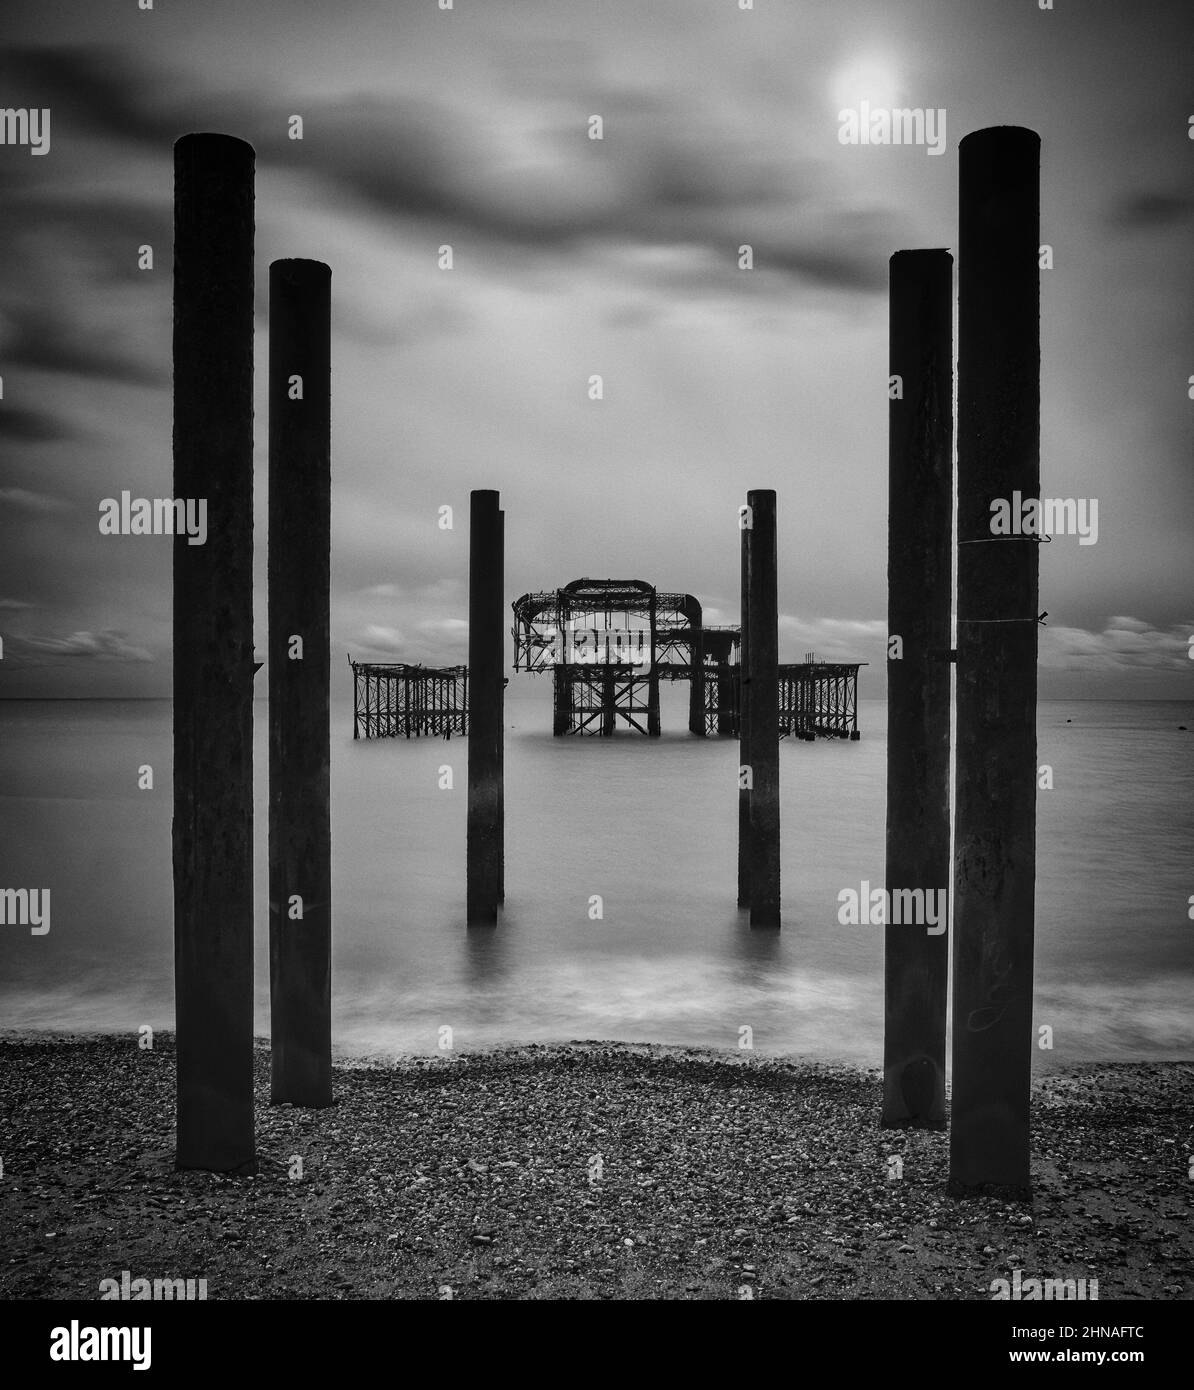 Ein monochromes Rendering des legendären West Pier in Brighton, um die markante architektonische Form der Ruine und ihrer Pier-Pfeiler zu betonen. Stockfoto